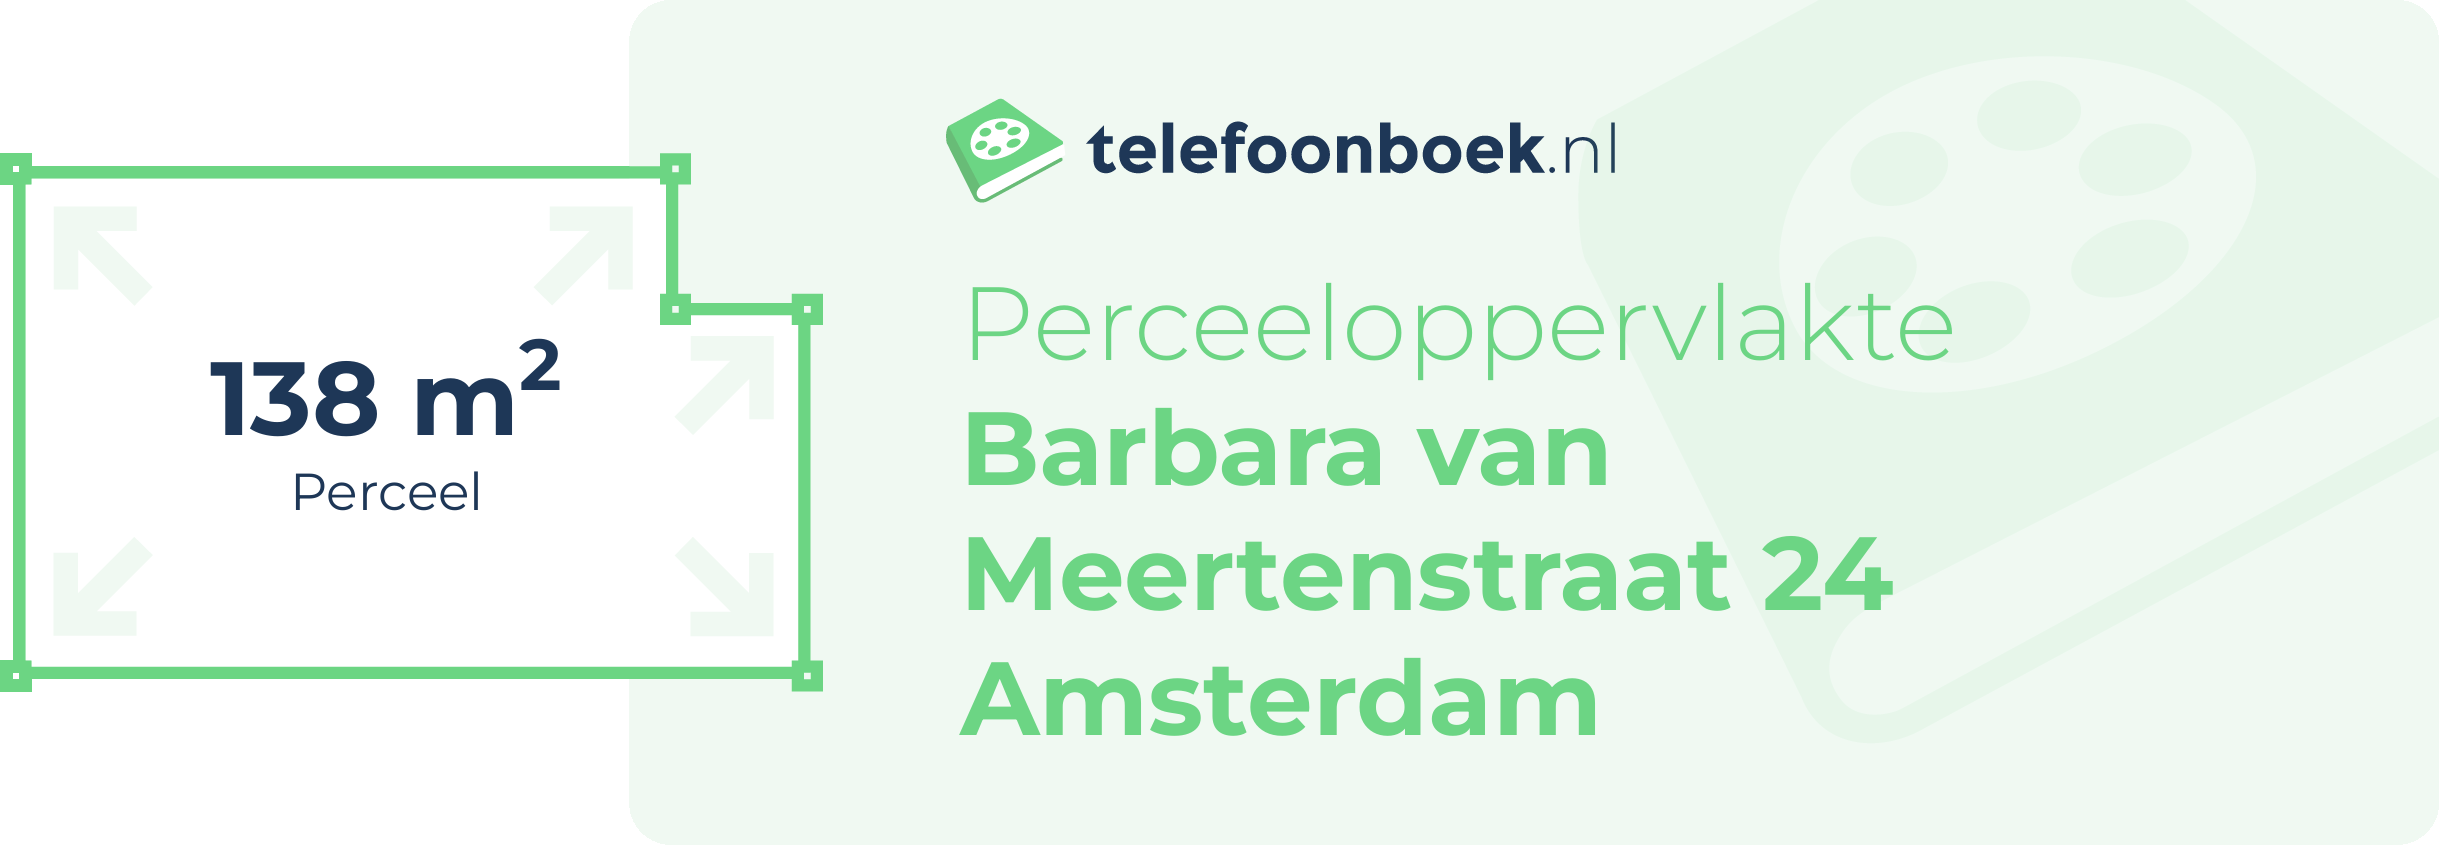 Perceeloppervlakte Barbara Van Meertenstraat 24 Amsterdam